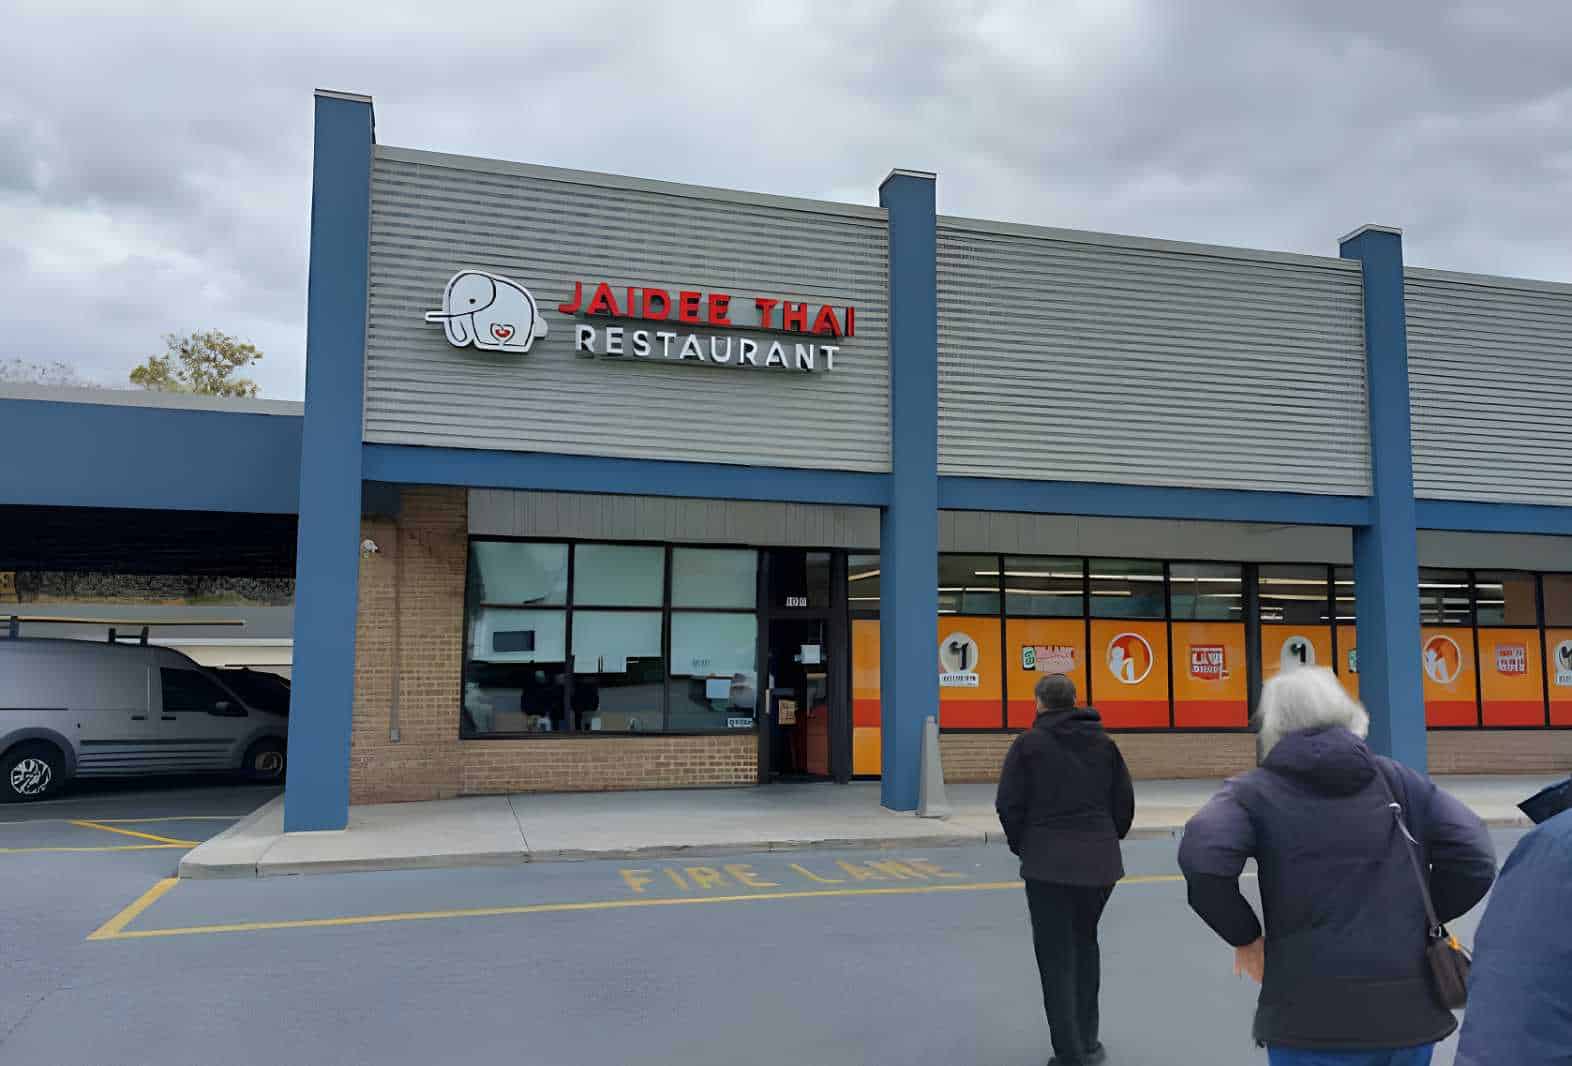 Jaidee Thai Restaurant Best Restaurants in Altoona, PA